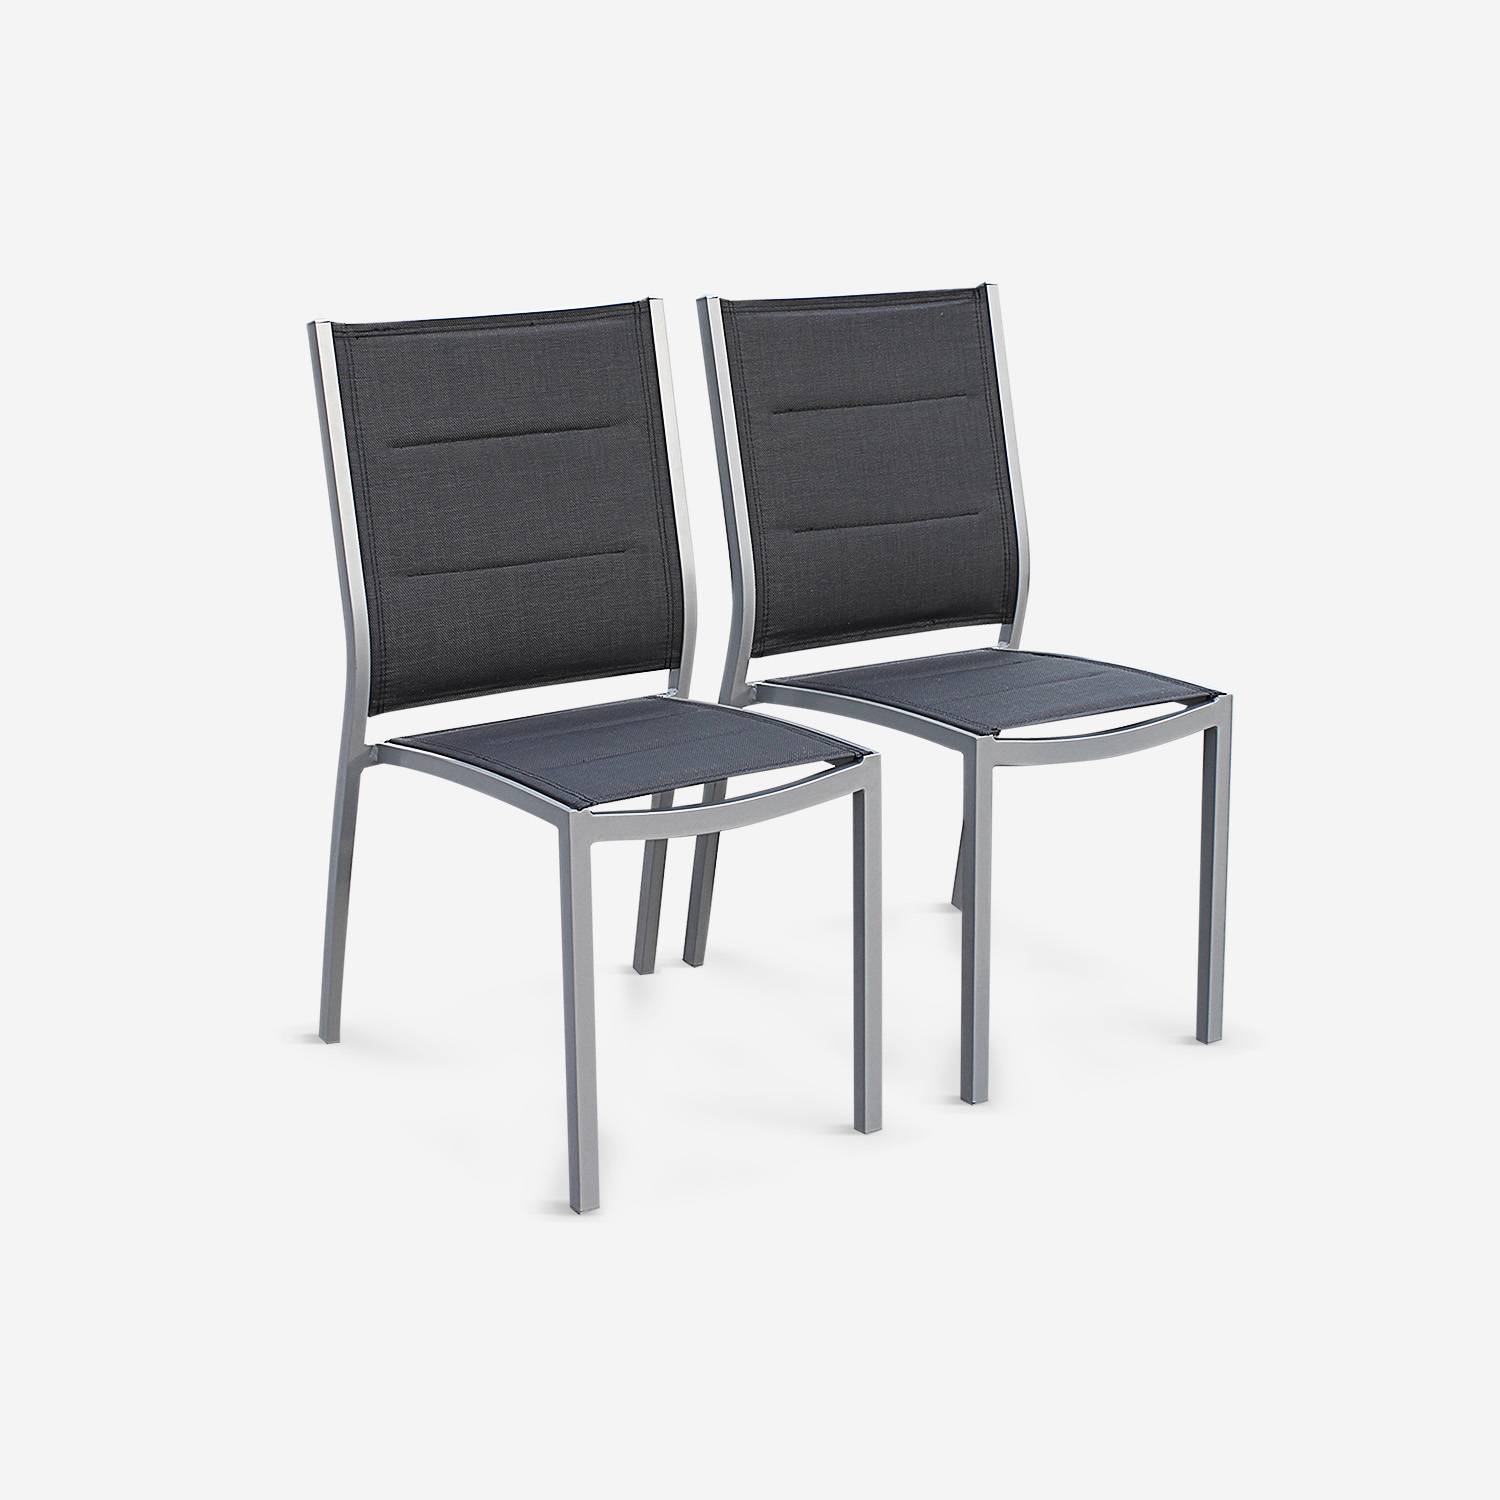 Set mit 2 Stühlen - Chicago/Odenton - Aluminium und graues Textil Photo1